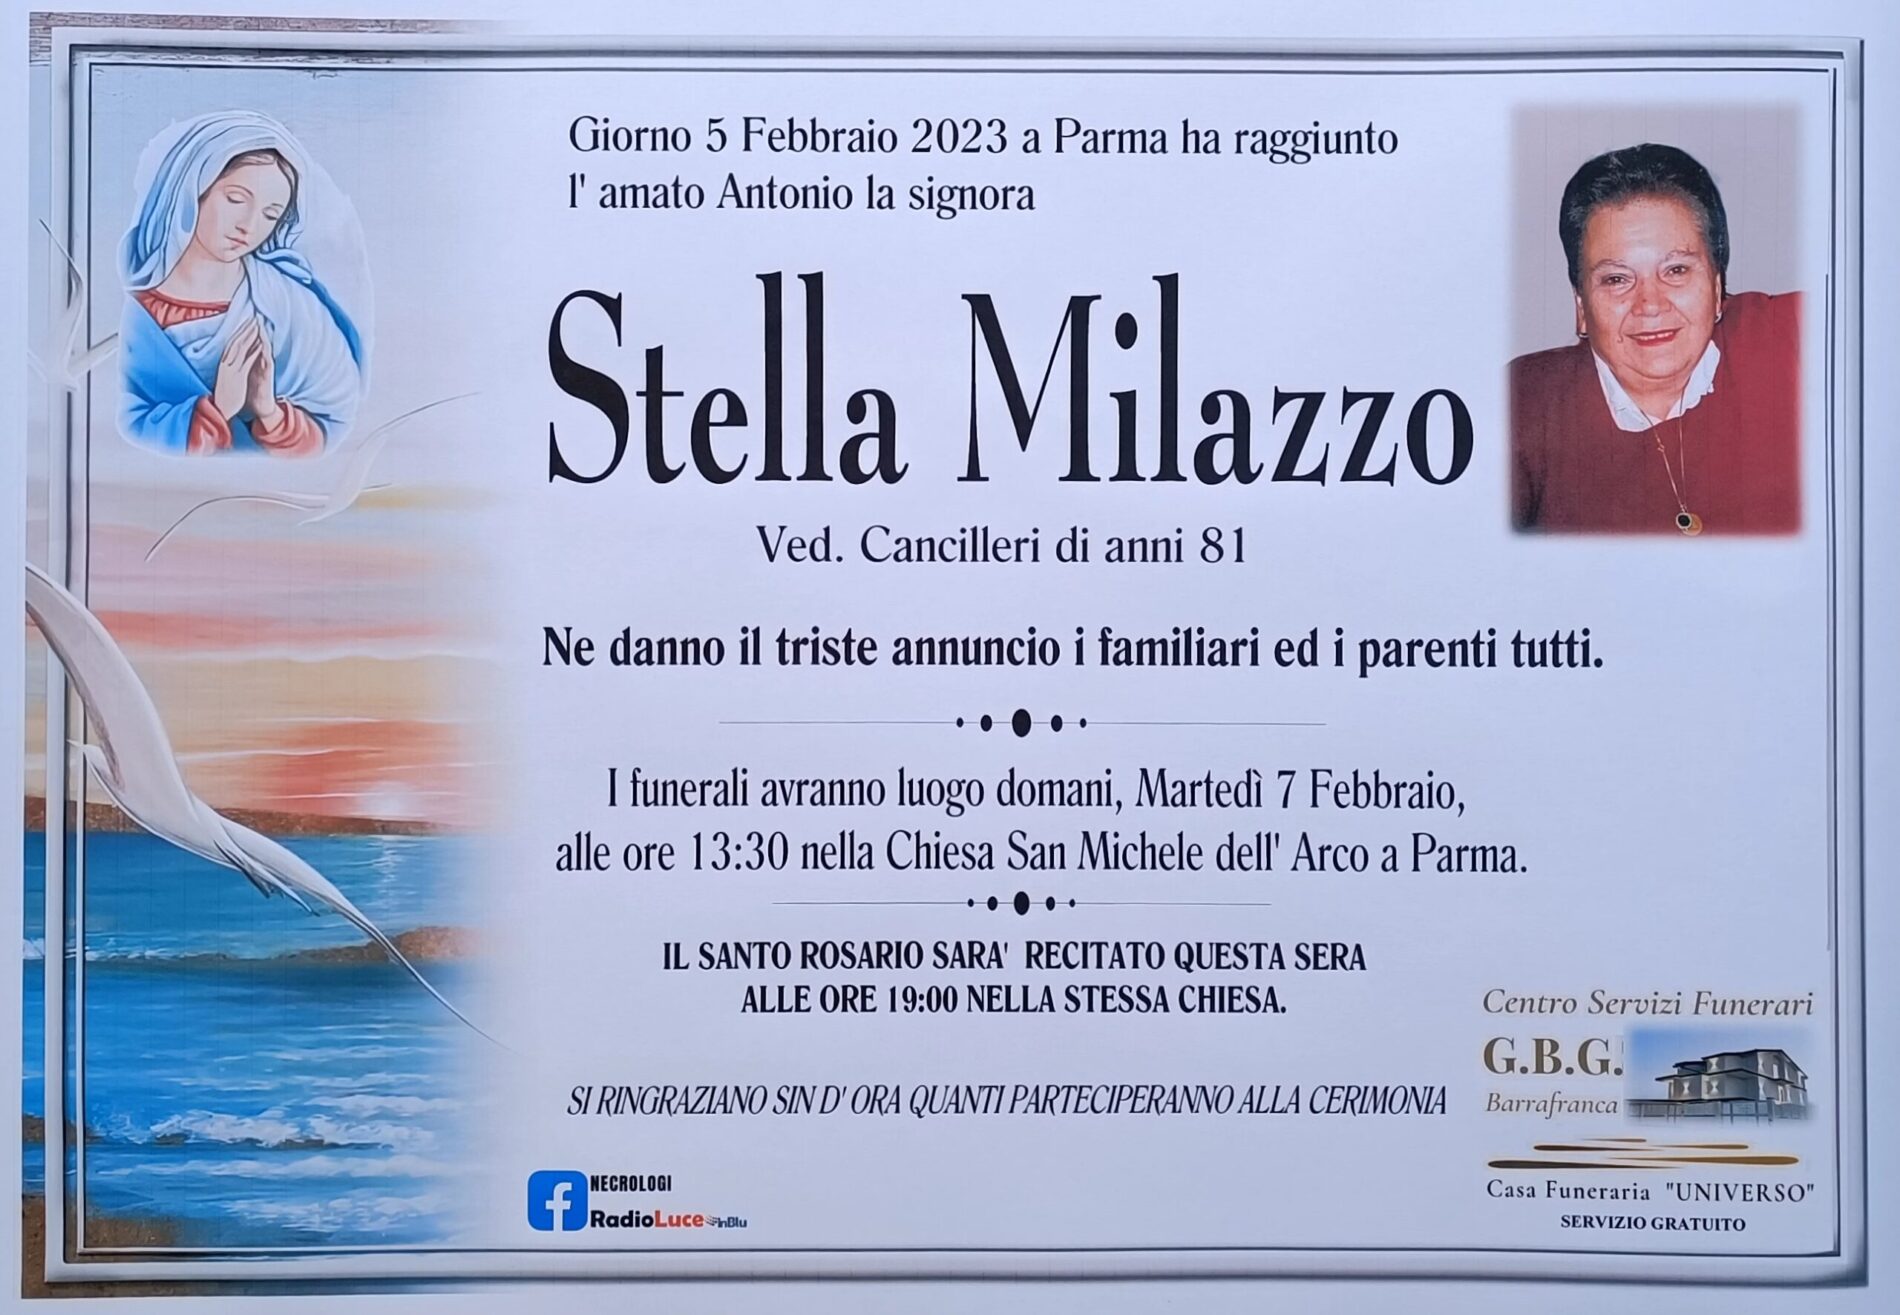 Annuncio servizi funerari agenzia G.B.G. signora Stella Milazzo anni 81 ved. Cancilleri